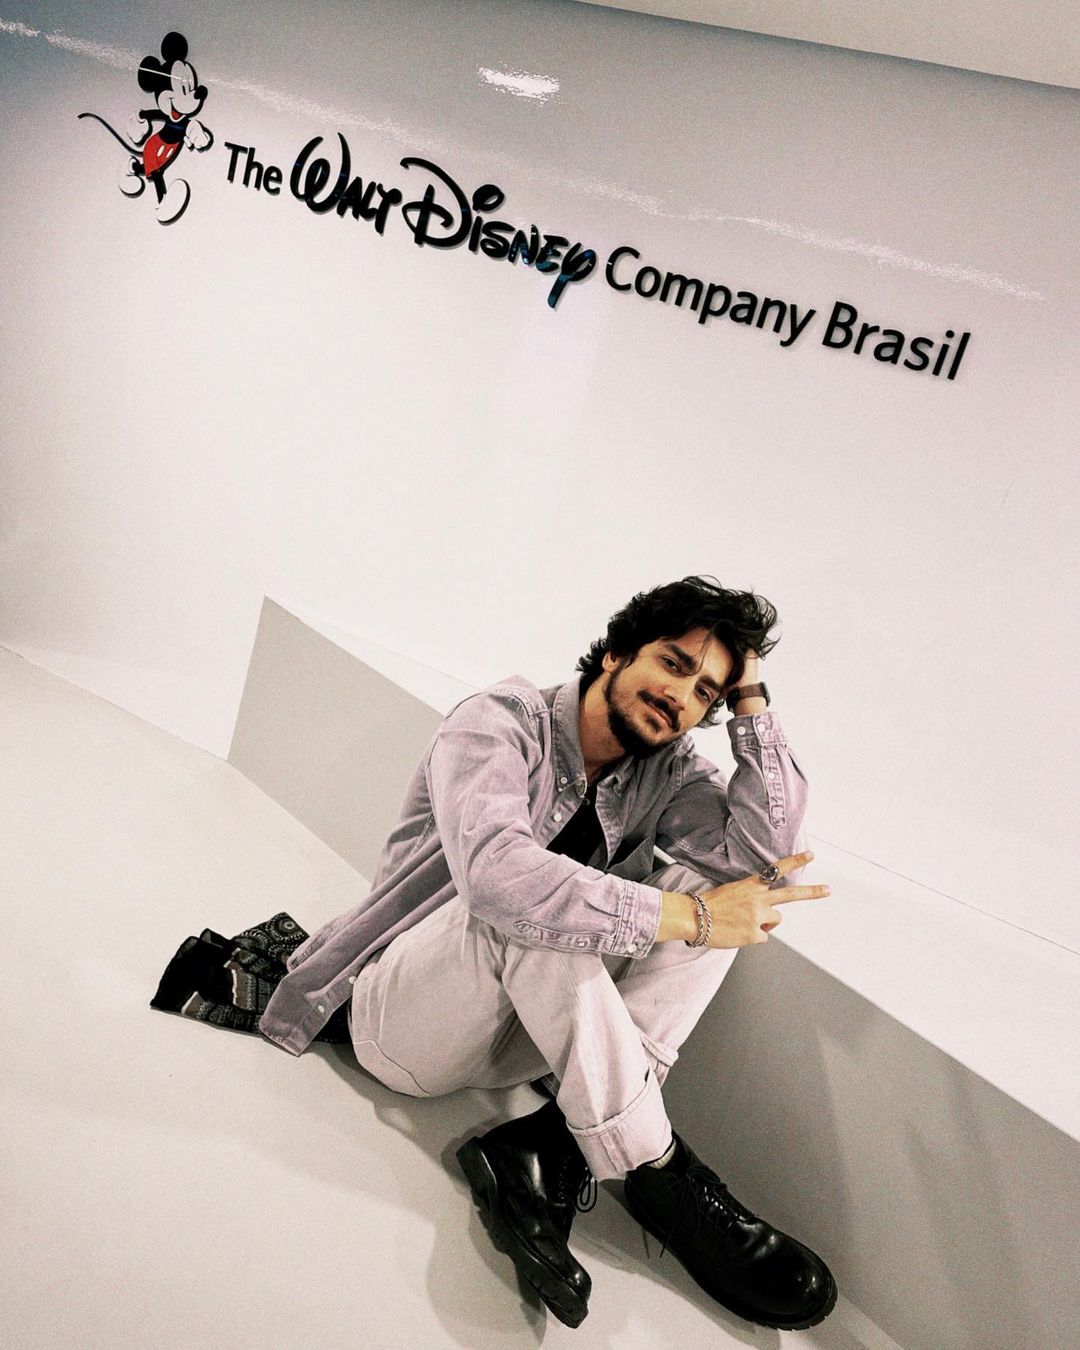 Rhener Freitas já foi garçom como seu personagem na série "O Coro"